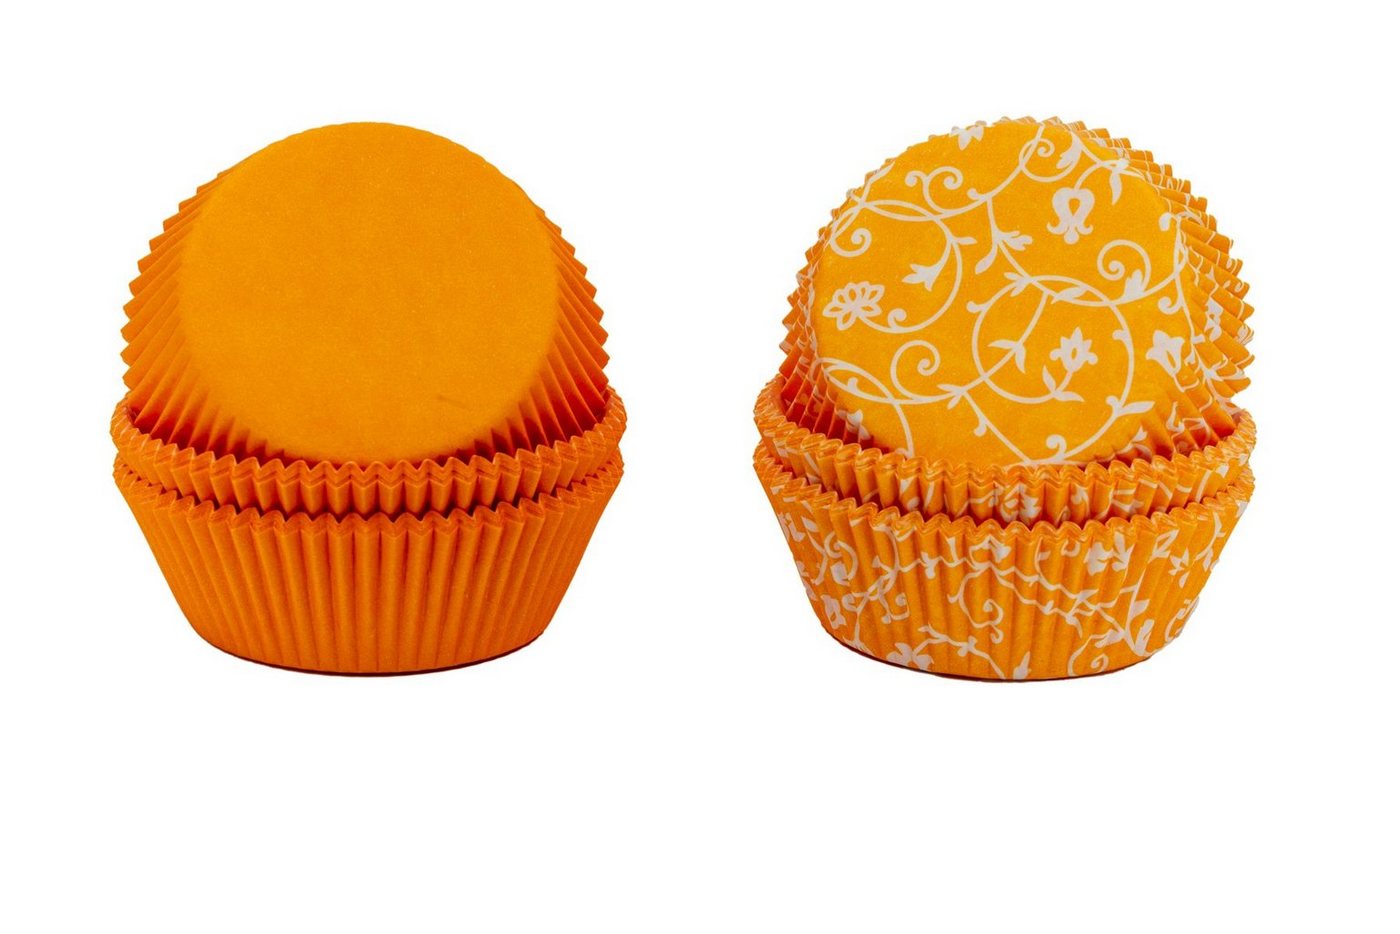 Demmler Muffinform Mango (Orange) mit & ohne Muster, Papier Muffinförmchen Set - Made in Germany von Demmler